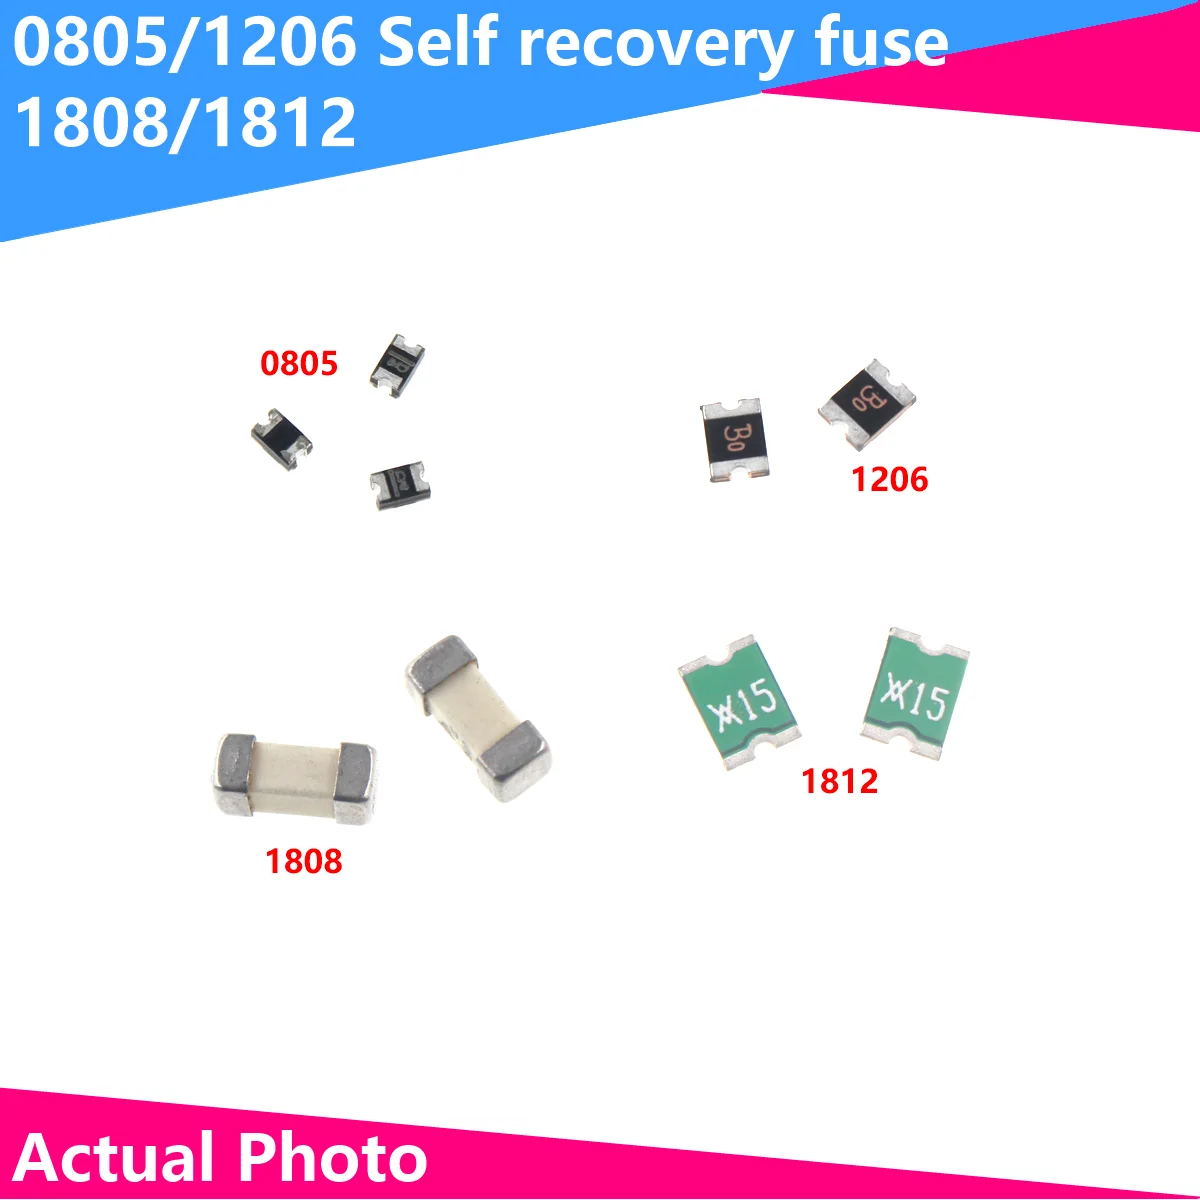 20PCS 0805 1206 1808 1812 0.1A 0.2A 0.3A 0.5A 0.75A 1A 1.1A 2A 3A SMD Resettable Fuse Self-Recovery Fuse PPTC